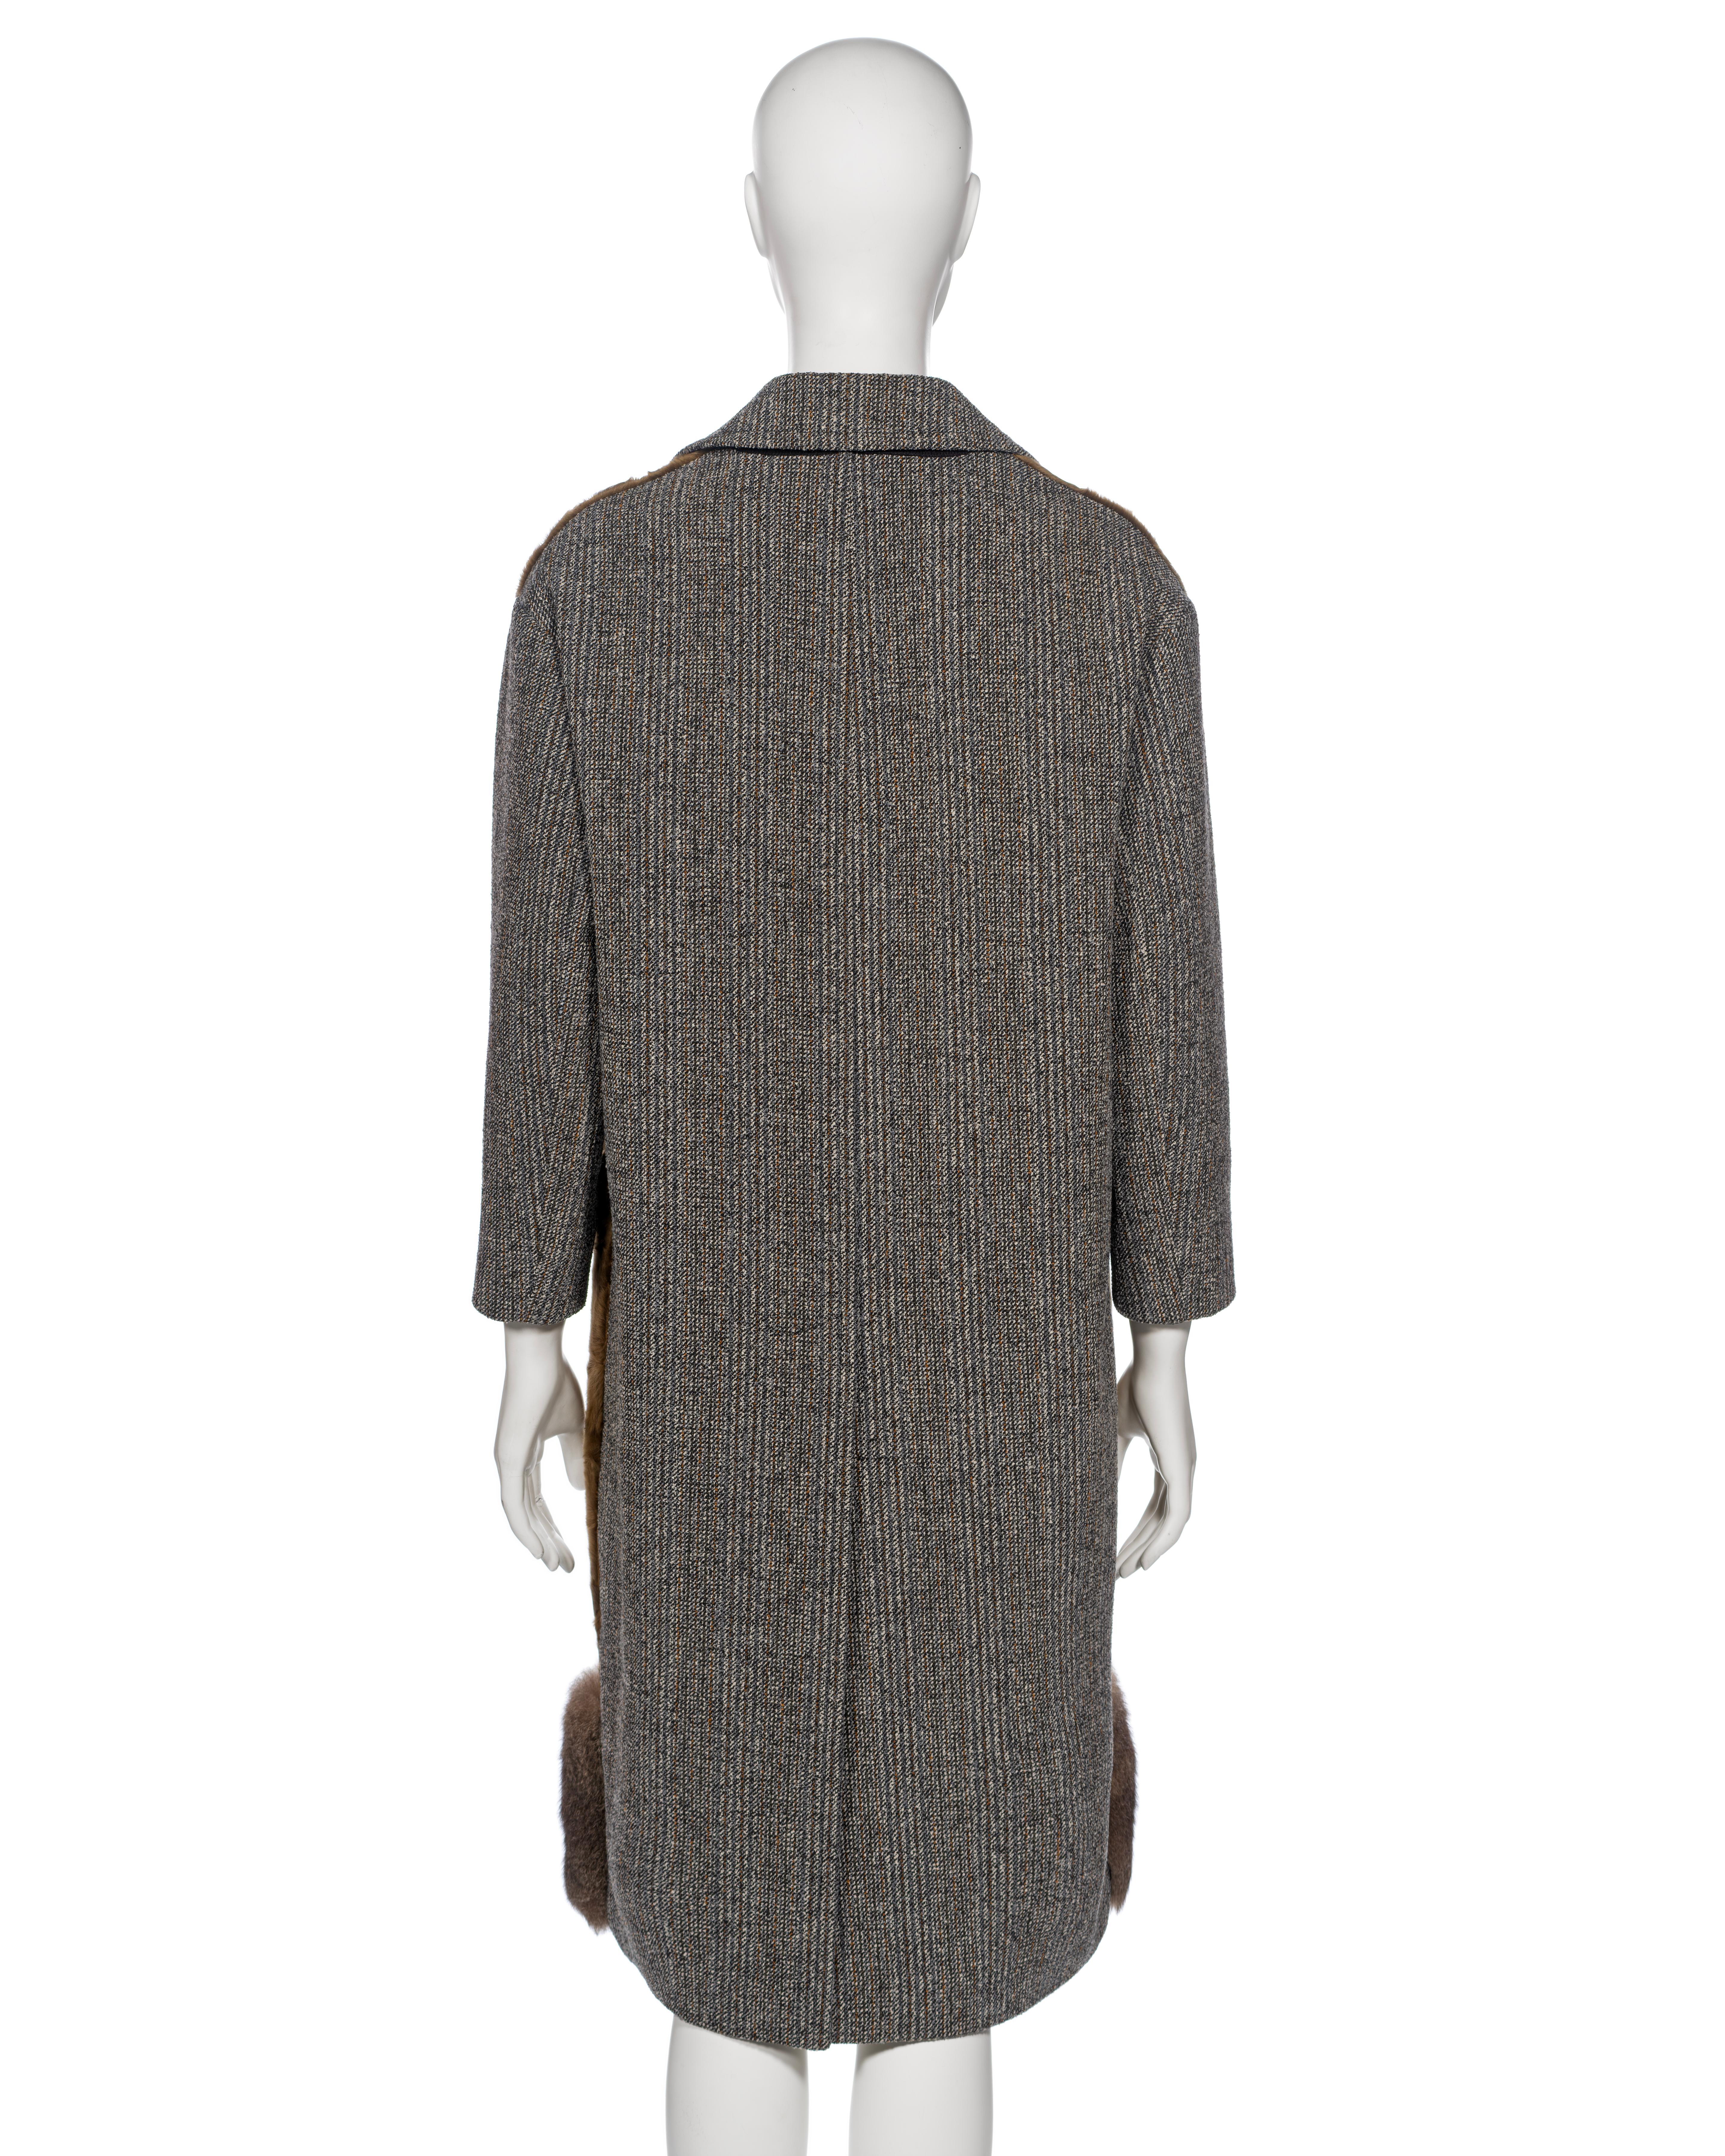 Prada by Miuccia Prada Grey and Brown Wool, Lamb and Possum Fur Coat, FW 2016 For Sale 8